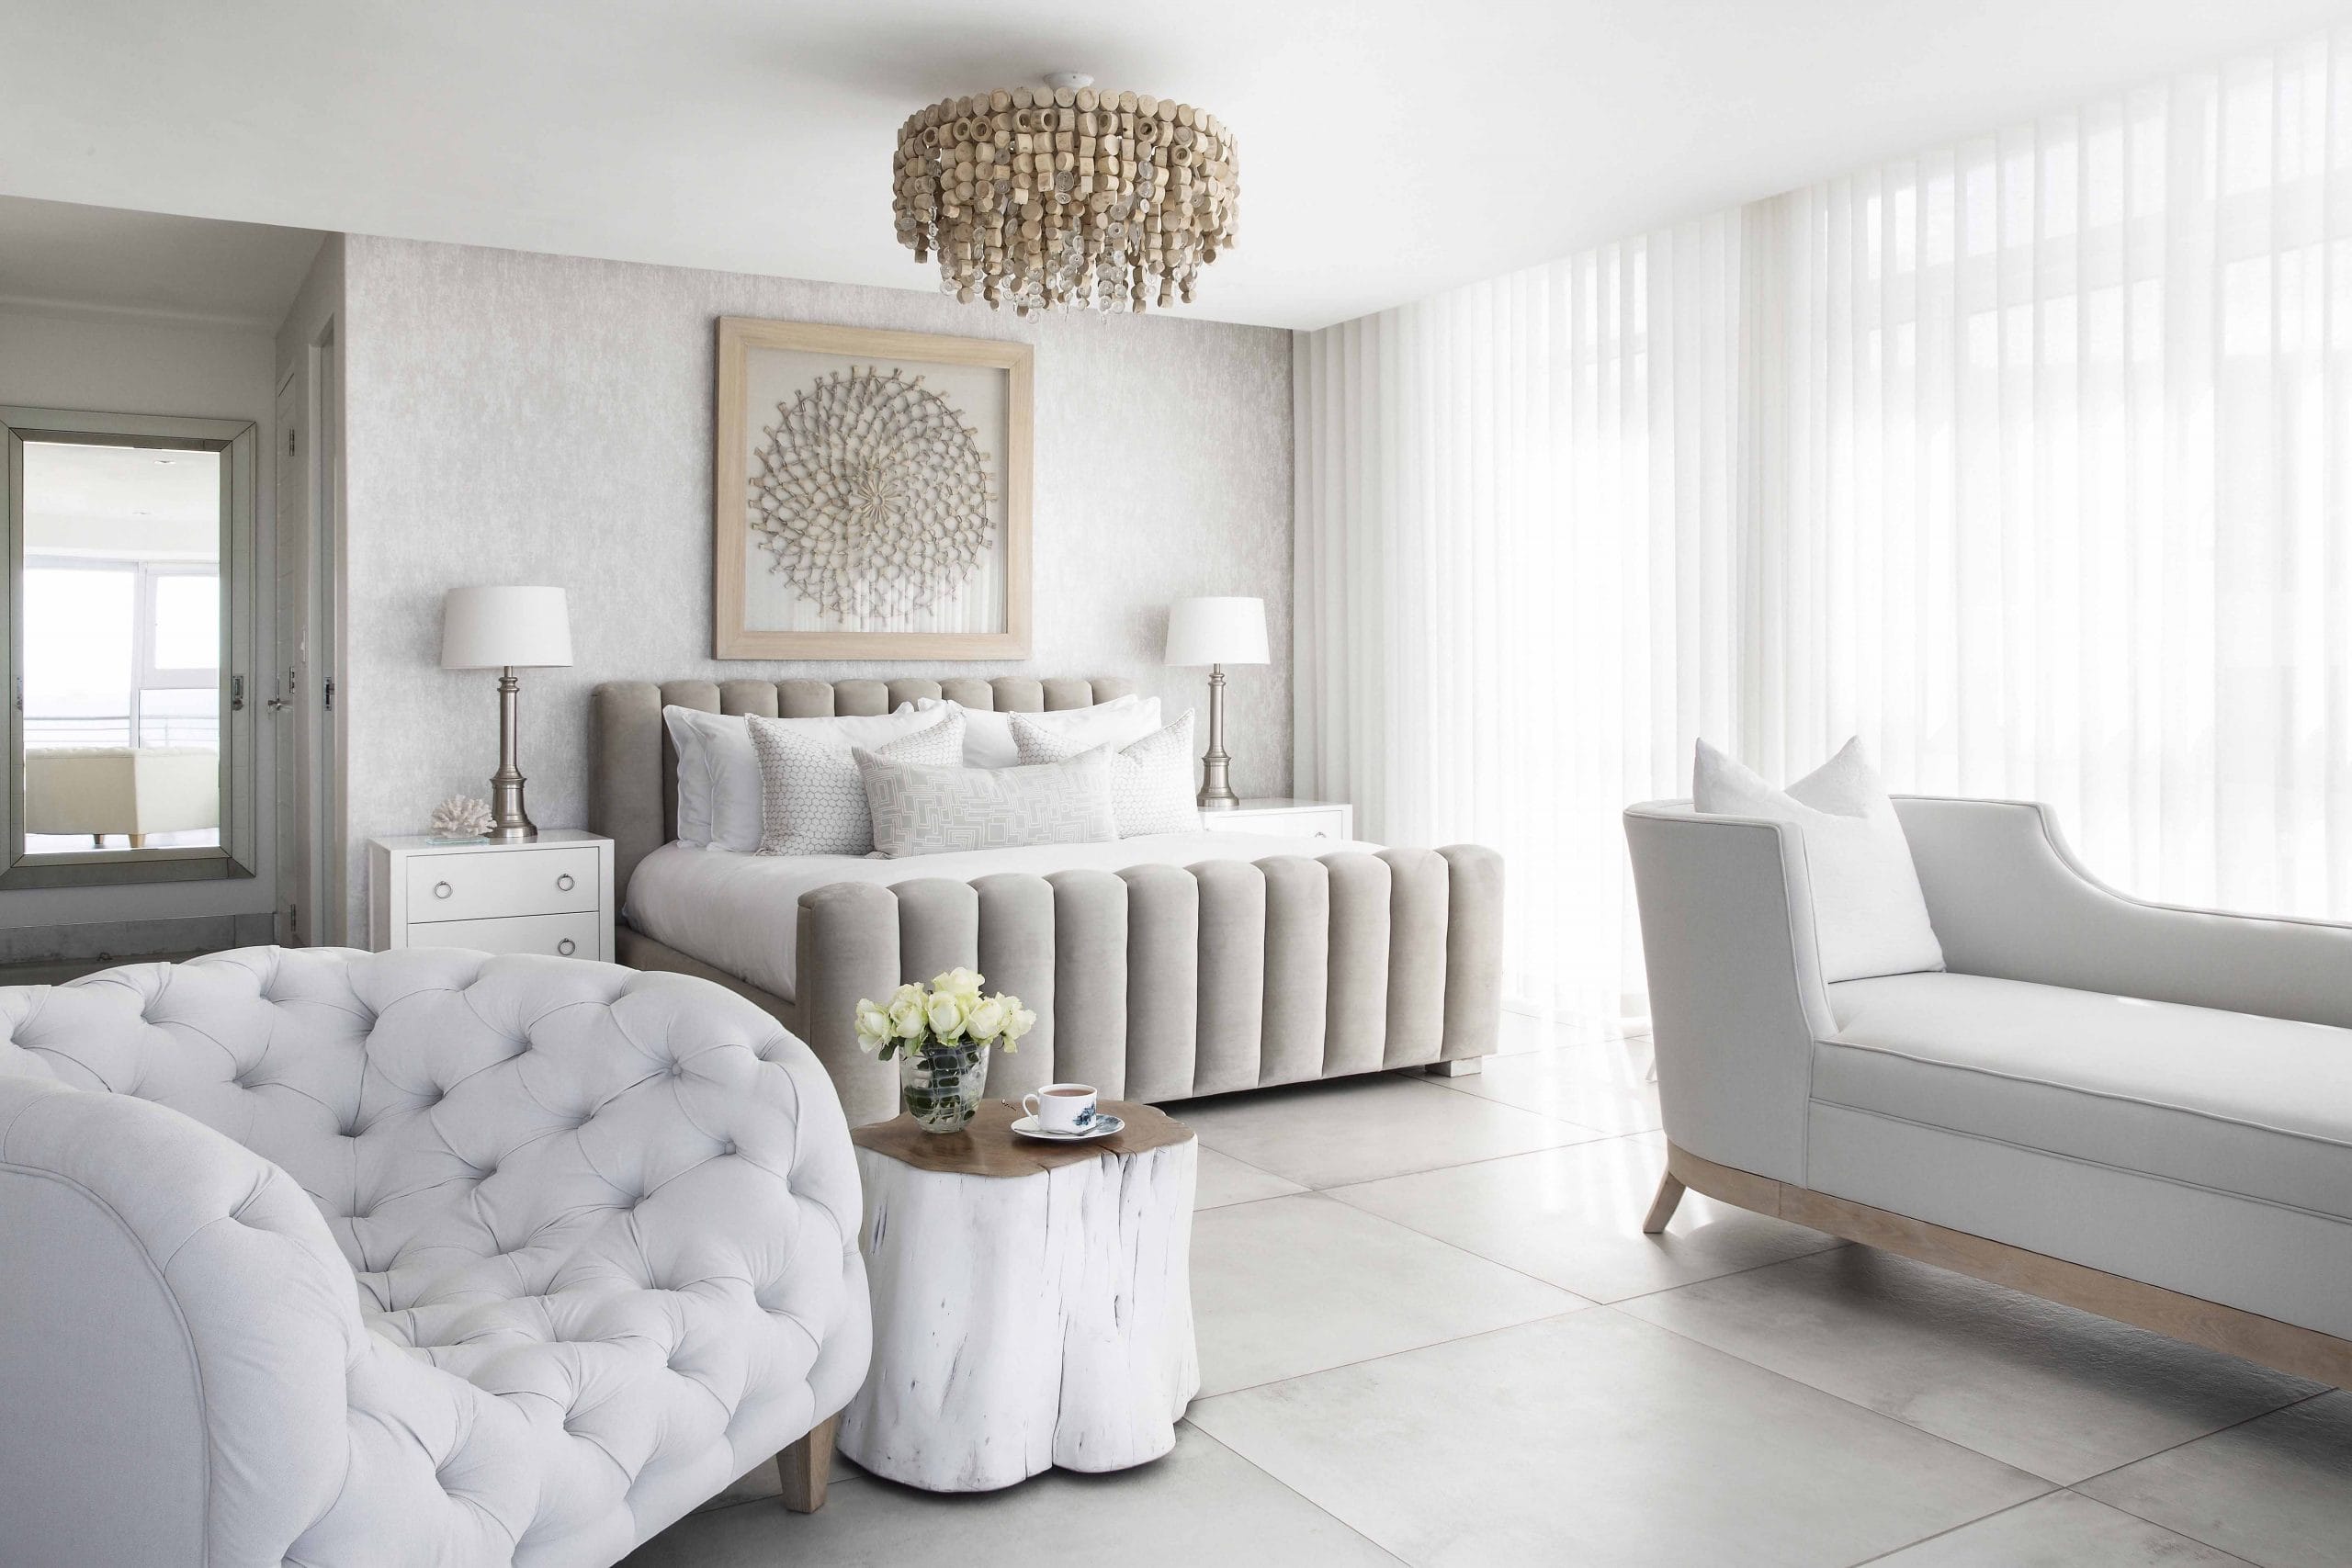 Organic modern bedroom furniture arrangement by Decorilla designer Anna C